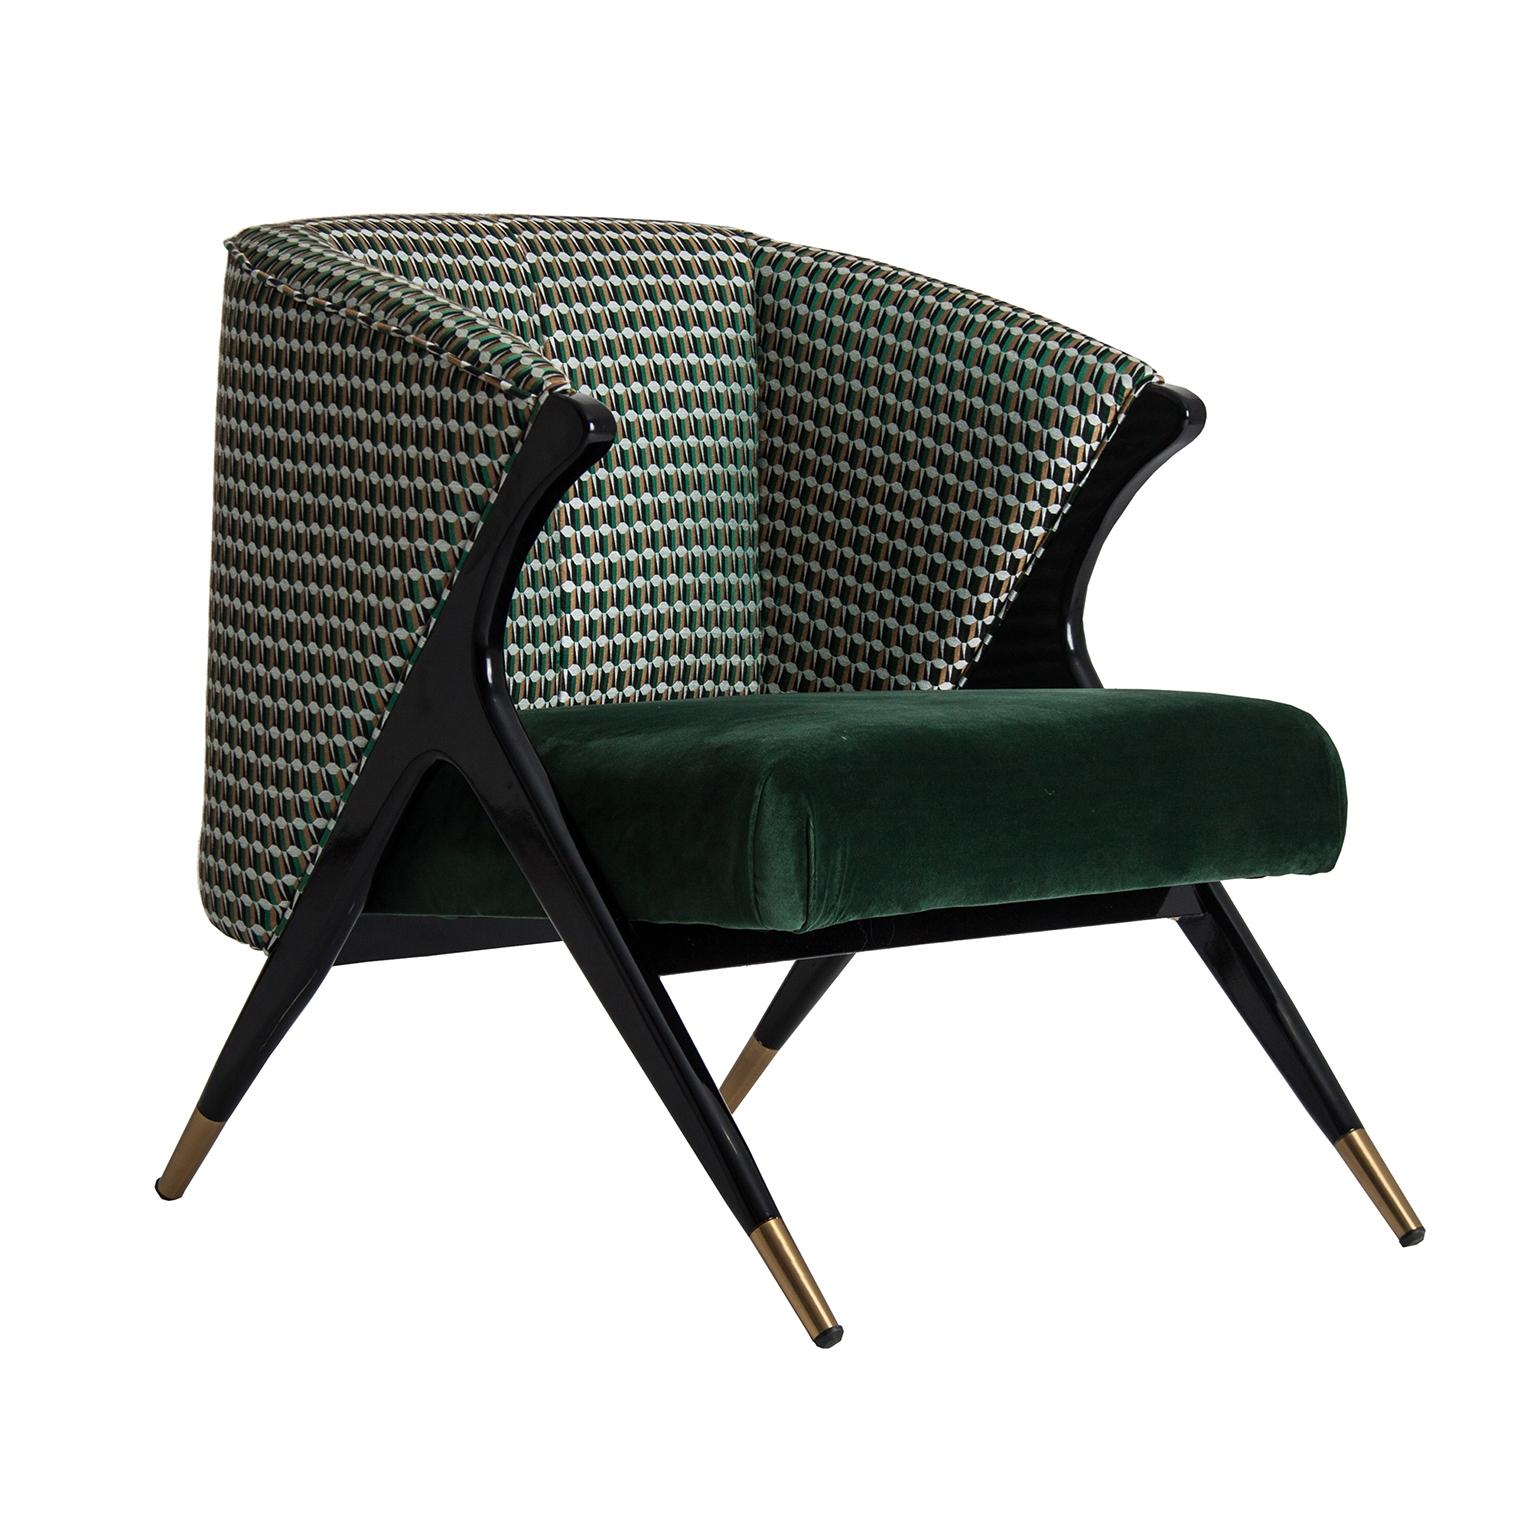 Schwarzer Lack Holzstruktur mit Messing-Finish mit tiefgrünen Wald und Grafik Samt Lounge-Sessel Mid-Century Modern Stil geschmückt.